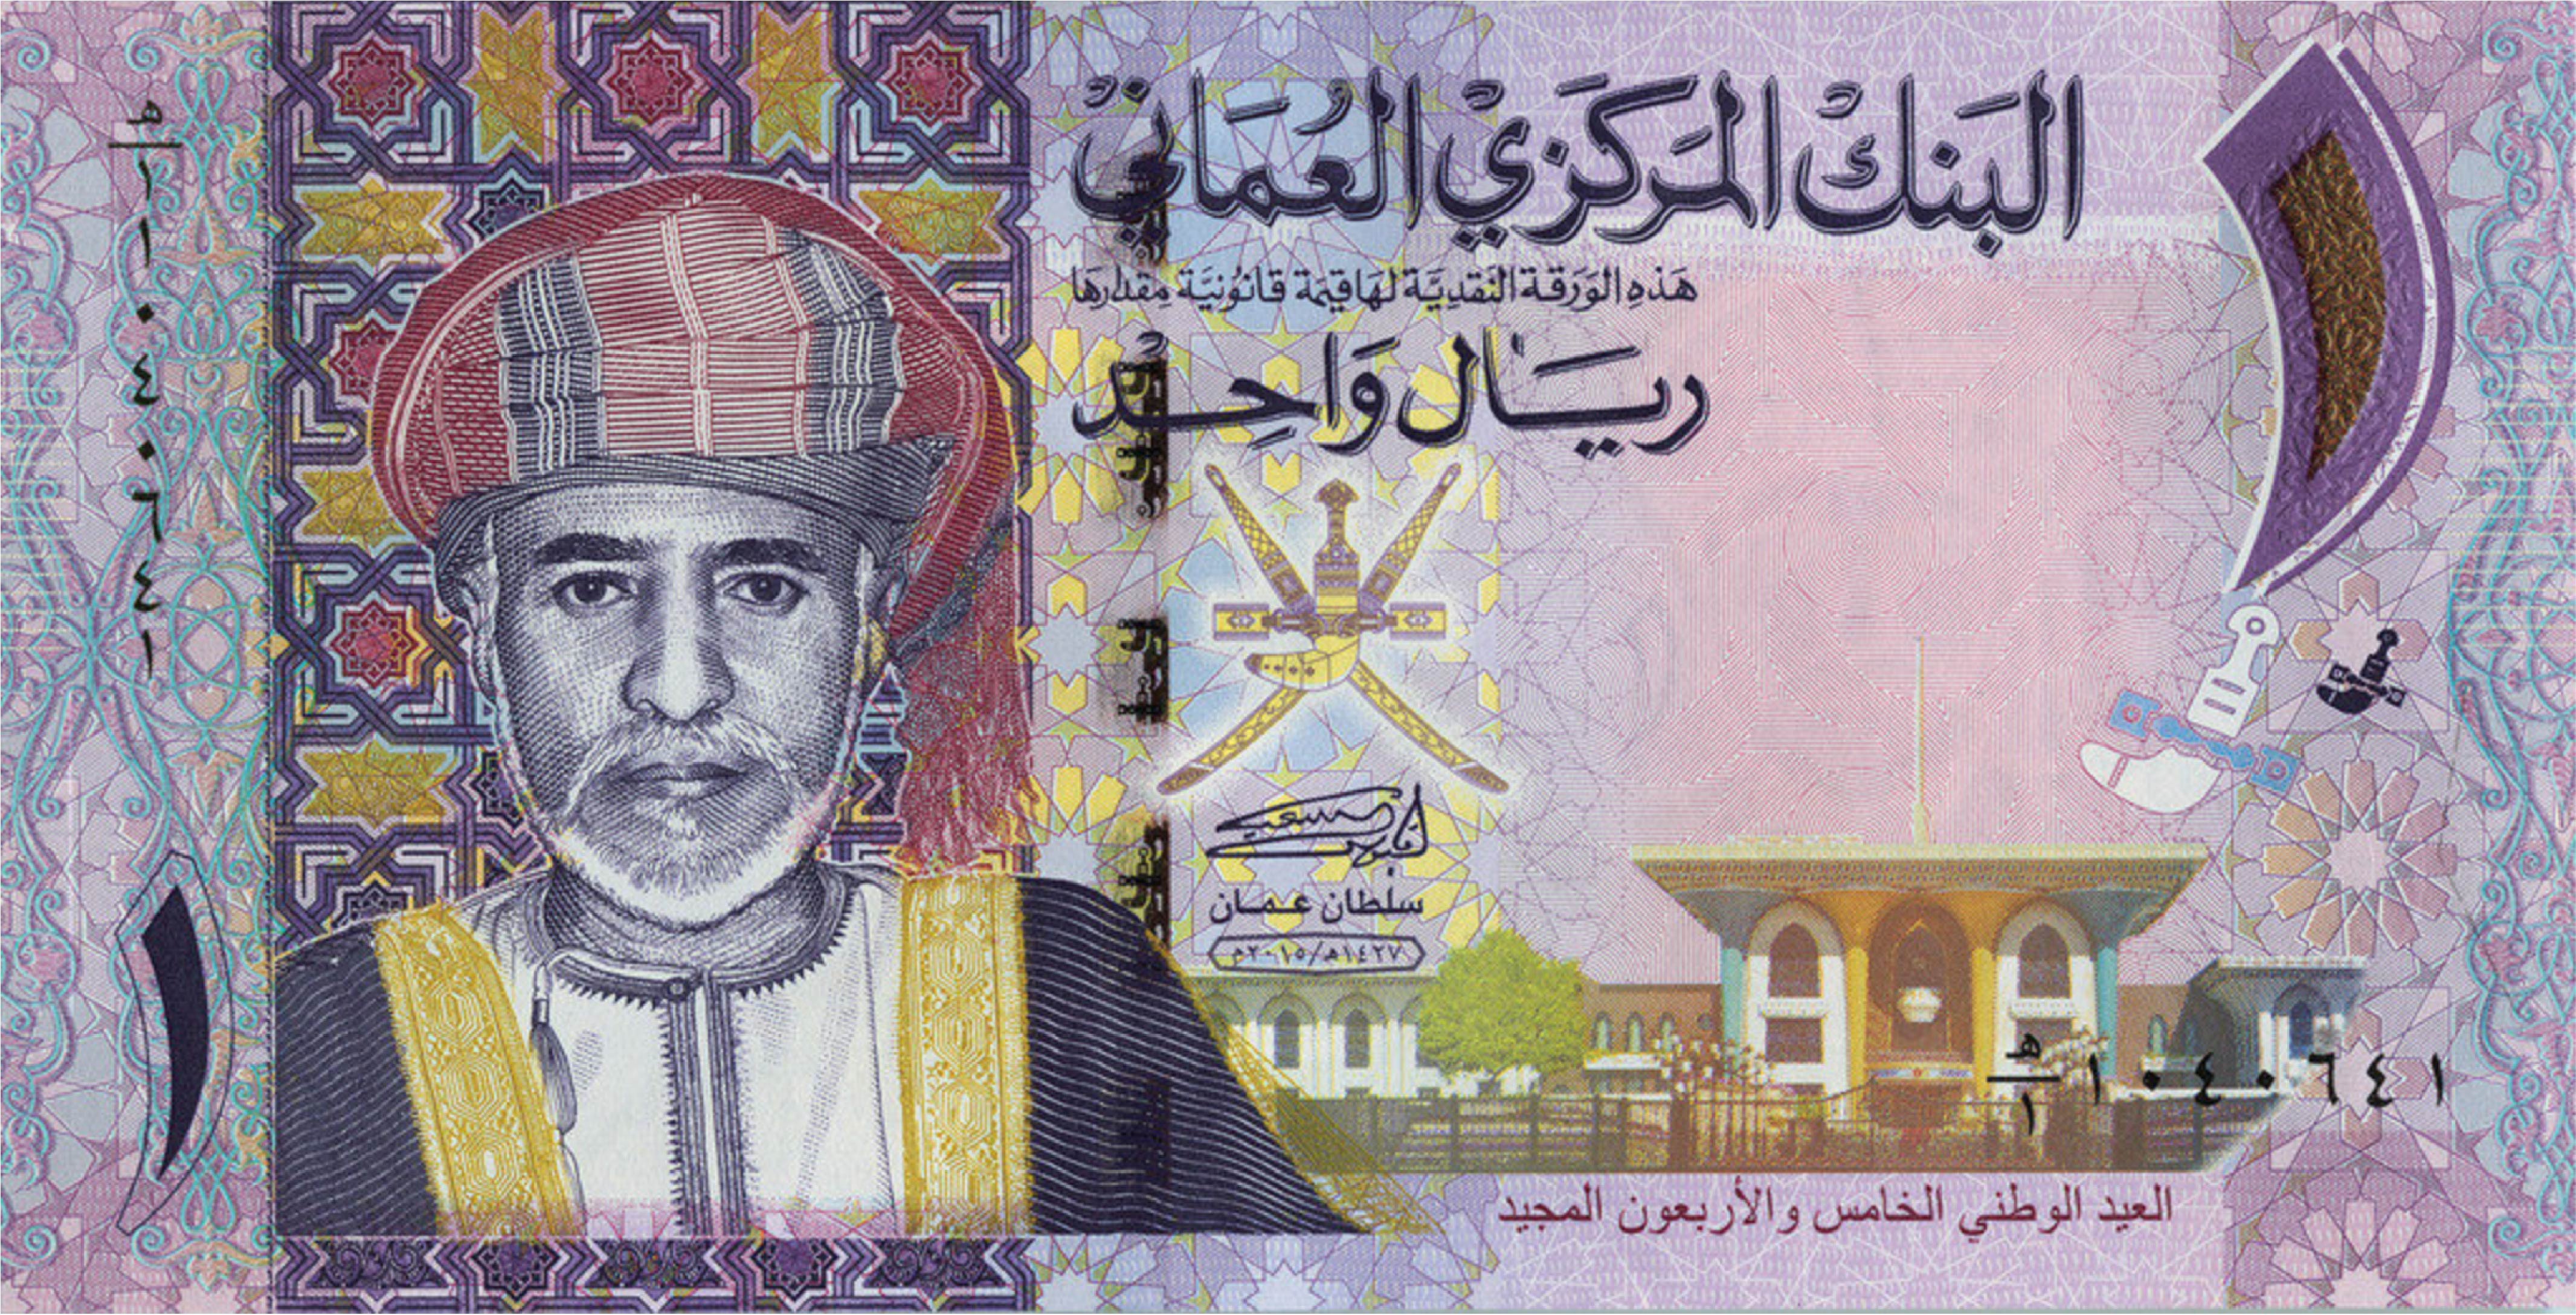 150 Omani Riyal To Inr